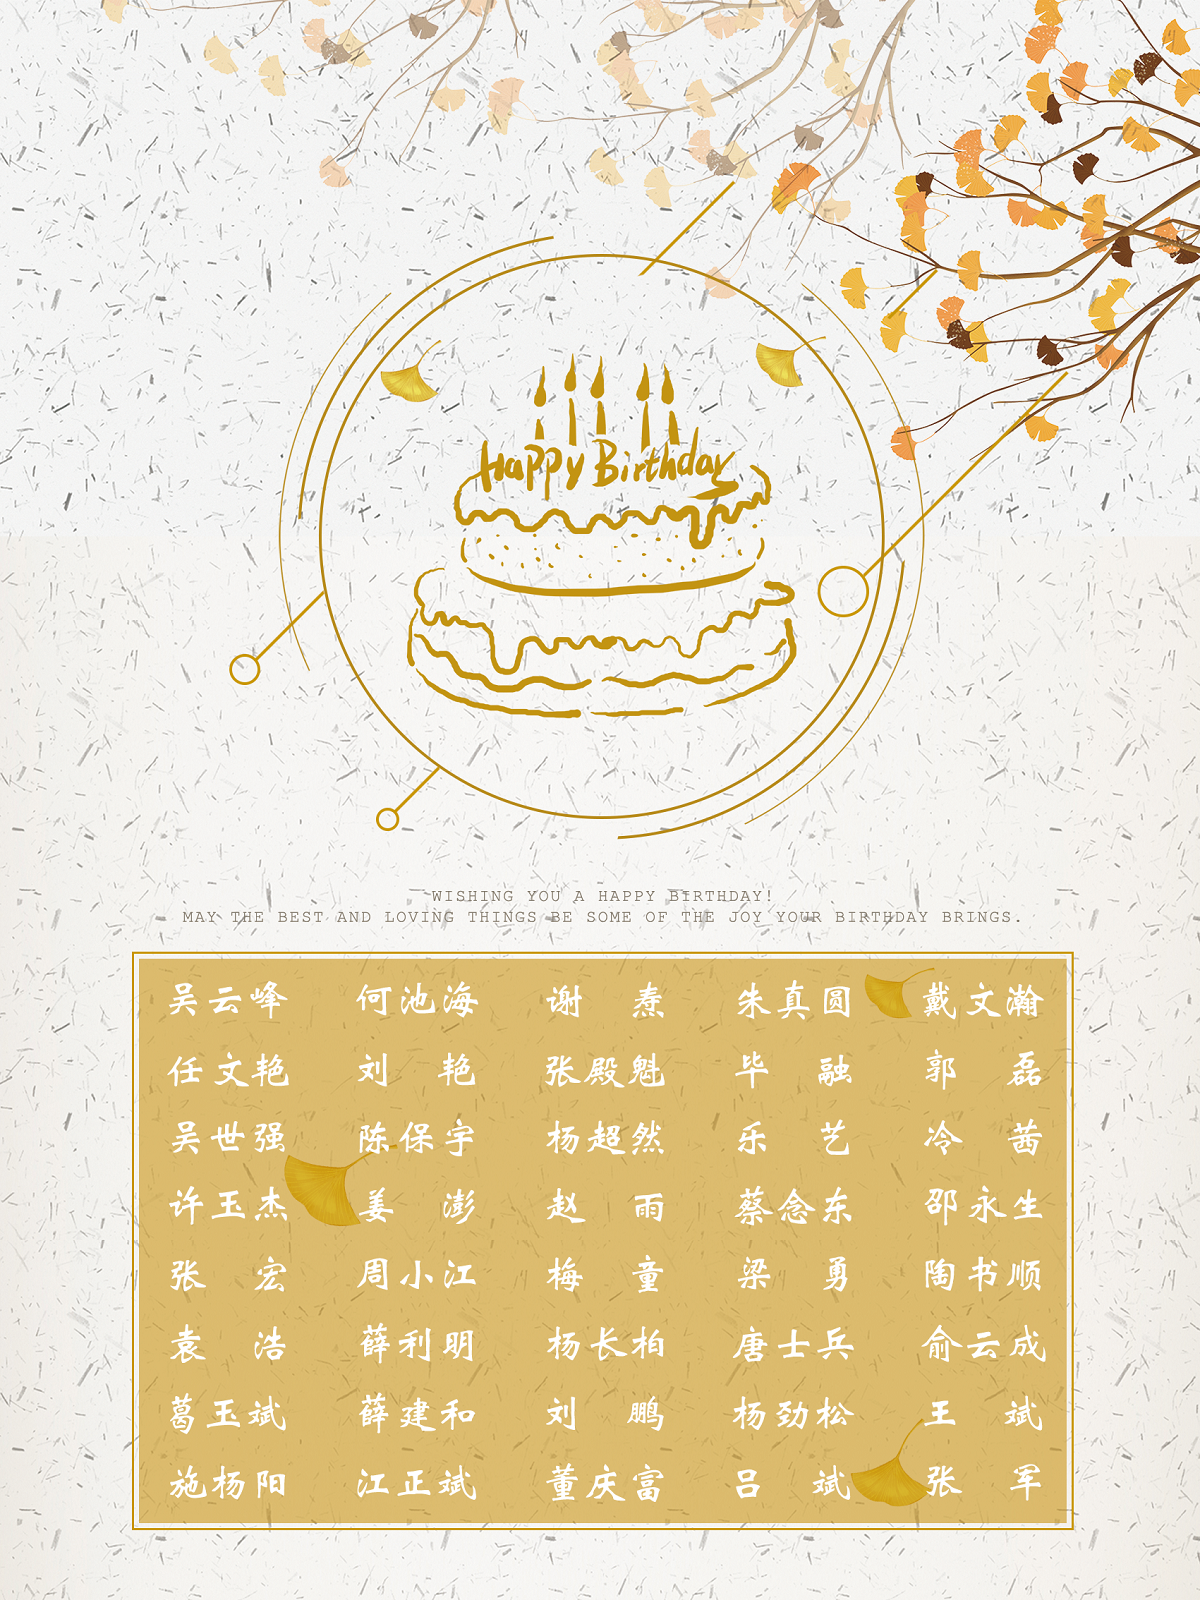 【生日祝福】恭祝9月生日的员工生日快乐！